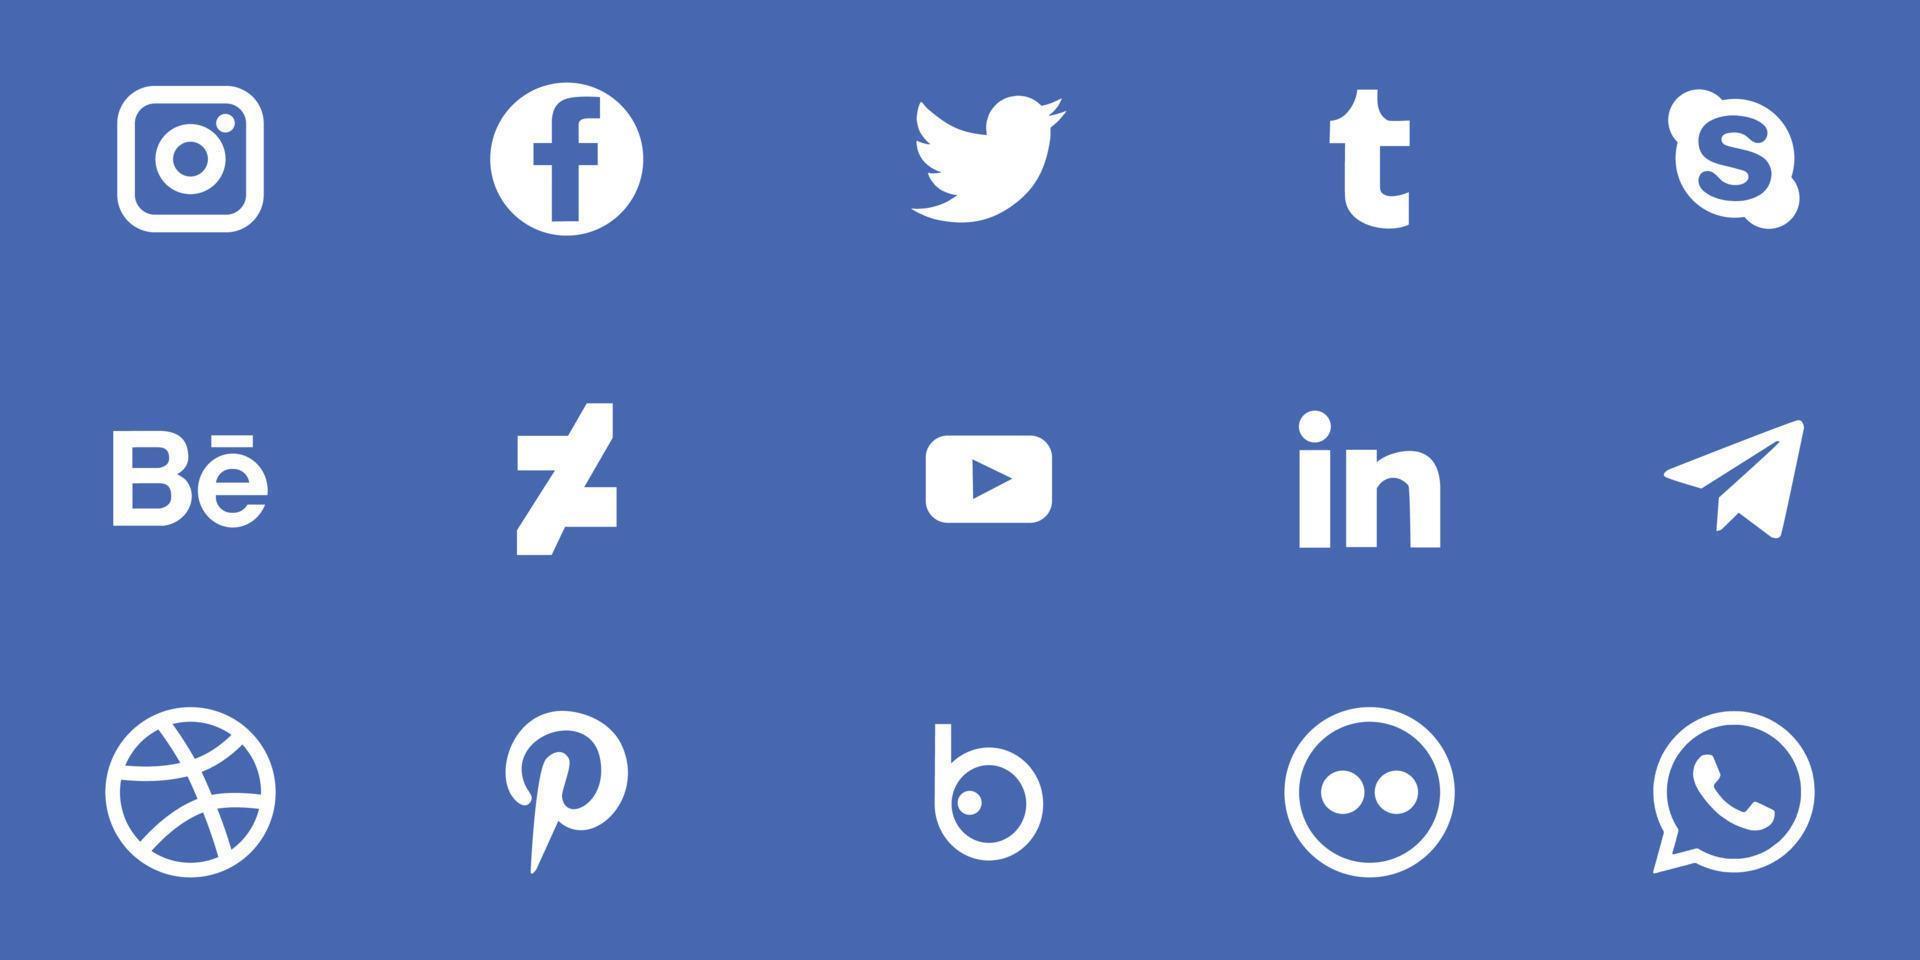 verzameling van populair sociaal media logo. facebook,behance, instagram, twitteren, gekoppeld, youtube, telegram, whatsappen. realistisch redactioneel reeks vector